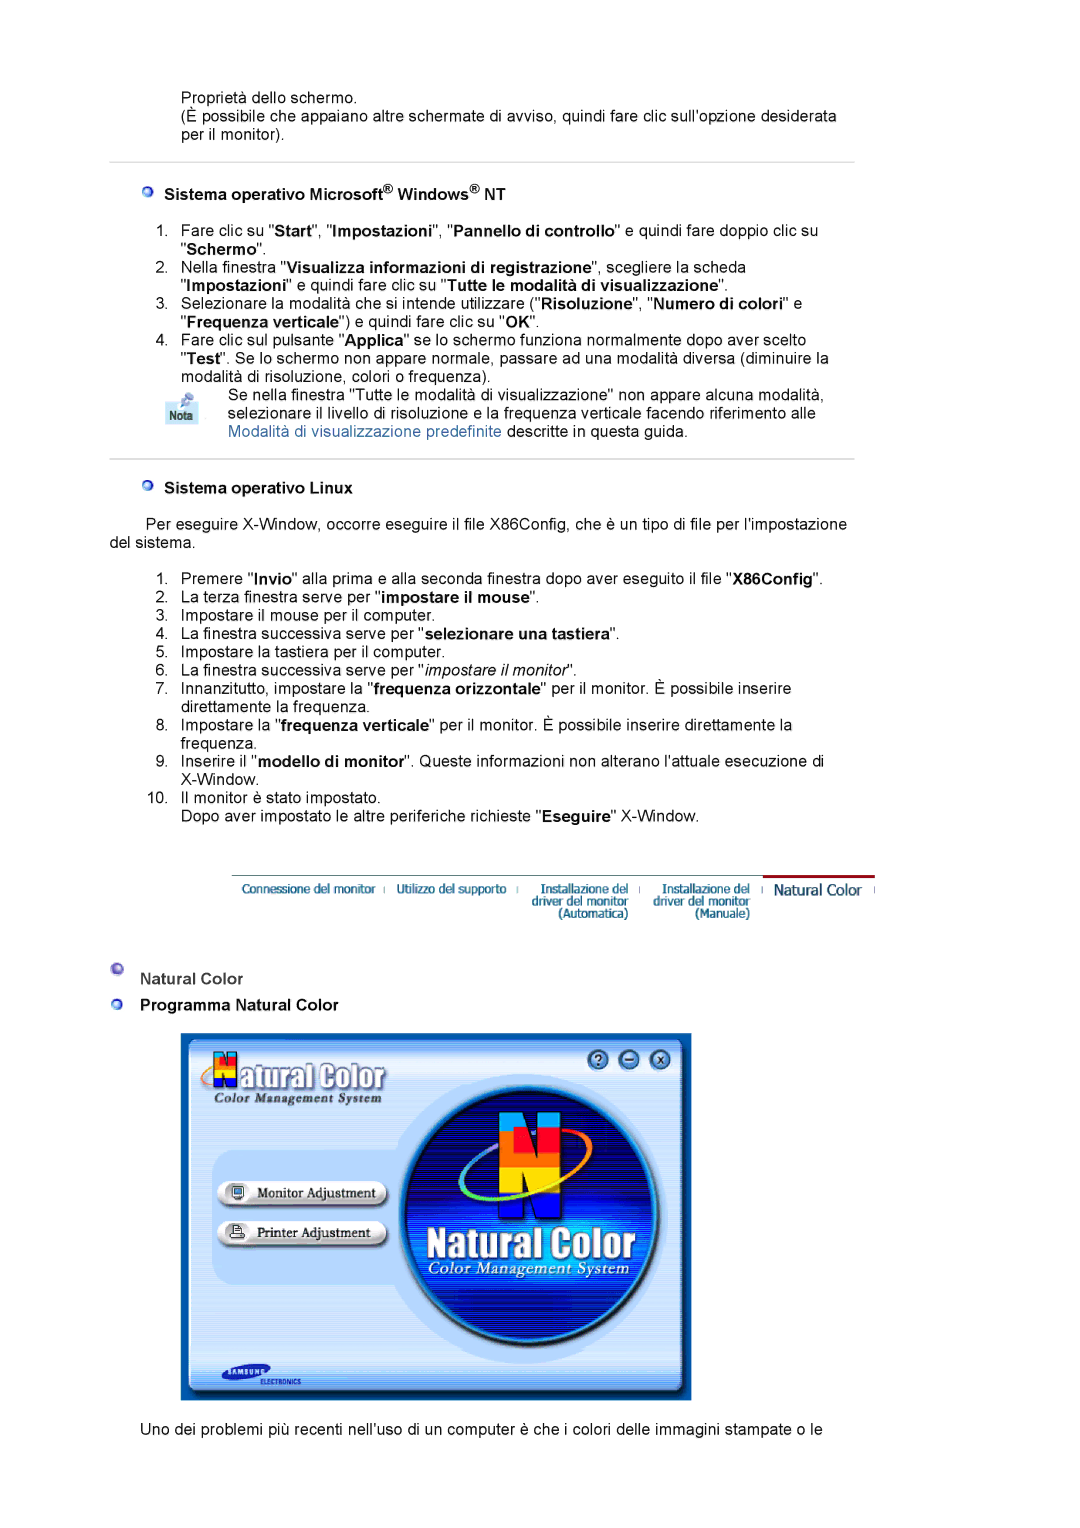 Samsung MJ17CSKS/EDC manual Sistema operativo Microsoft Windows NT, Sistema operativo Linux, Natural Color 